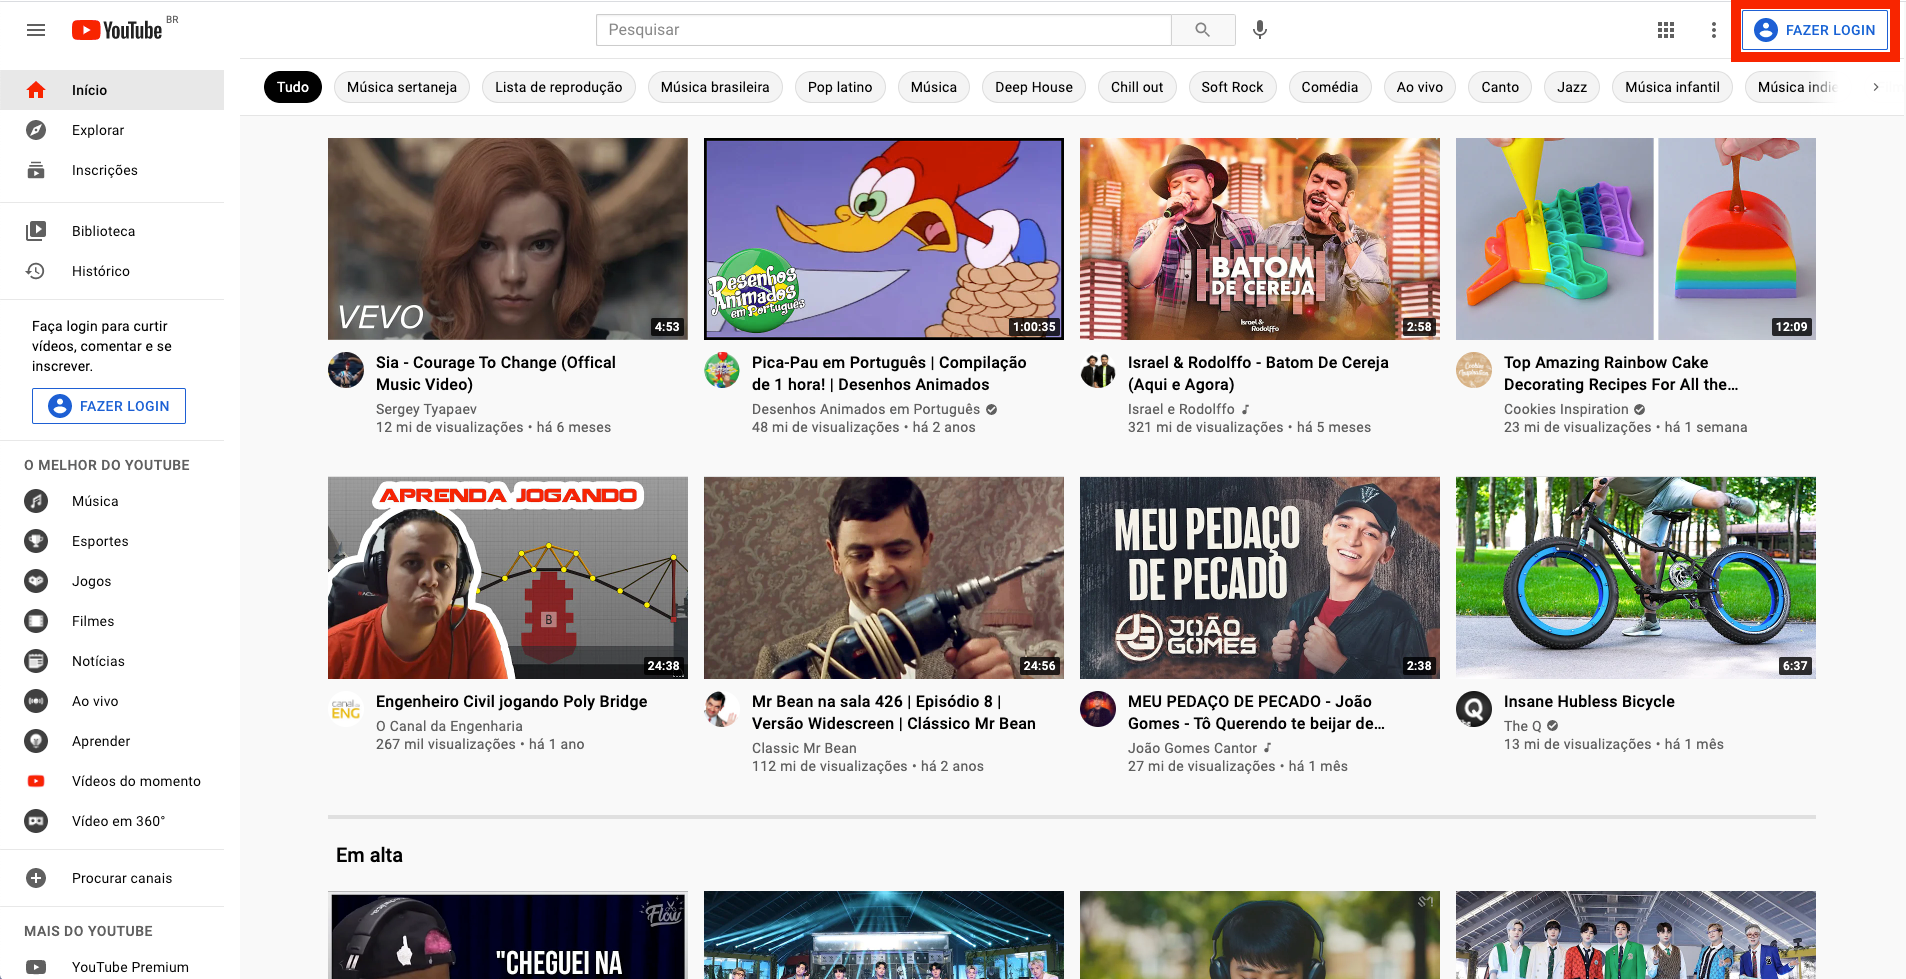 Captura de tela do YouTube. Página inicial com botão 'Fazer login' destacado por uma borda vermelha. O botão está posicionado na área superior direita da tela